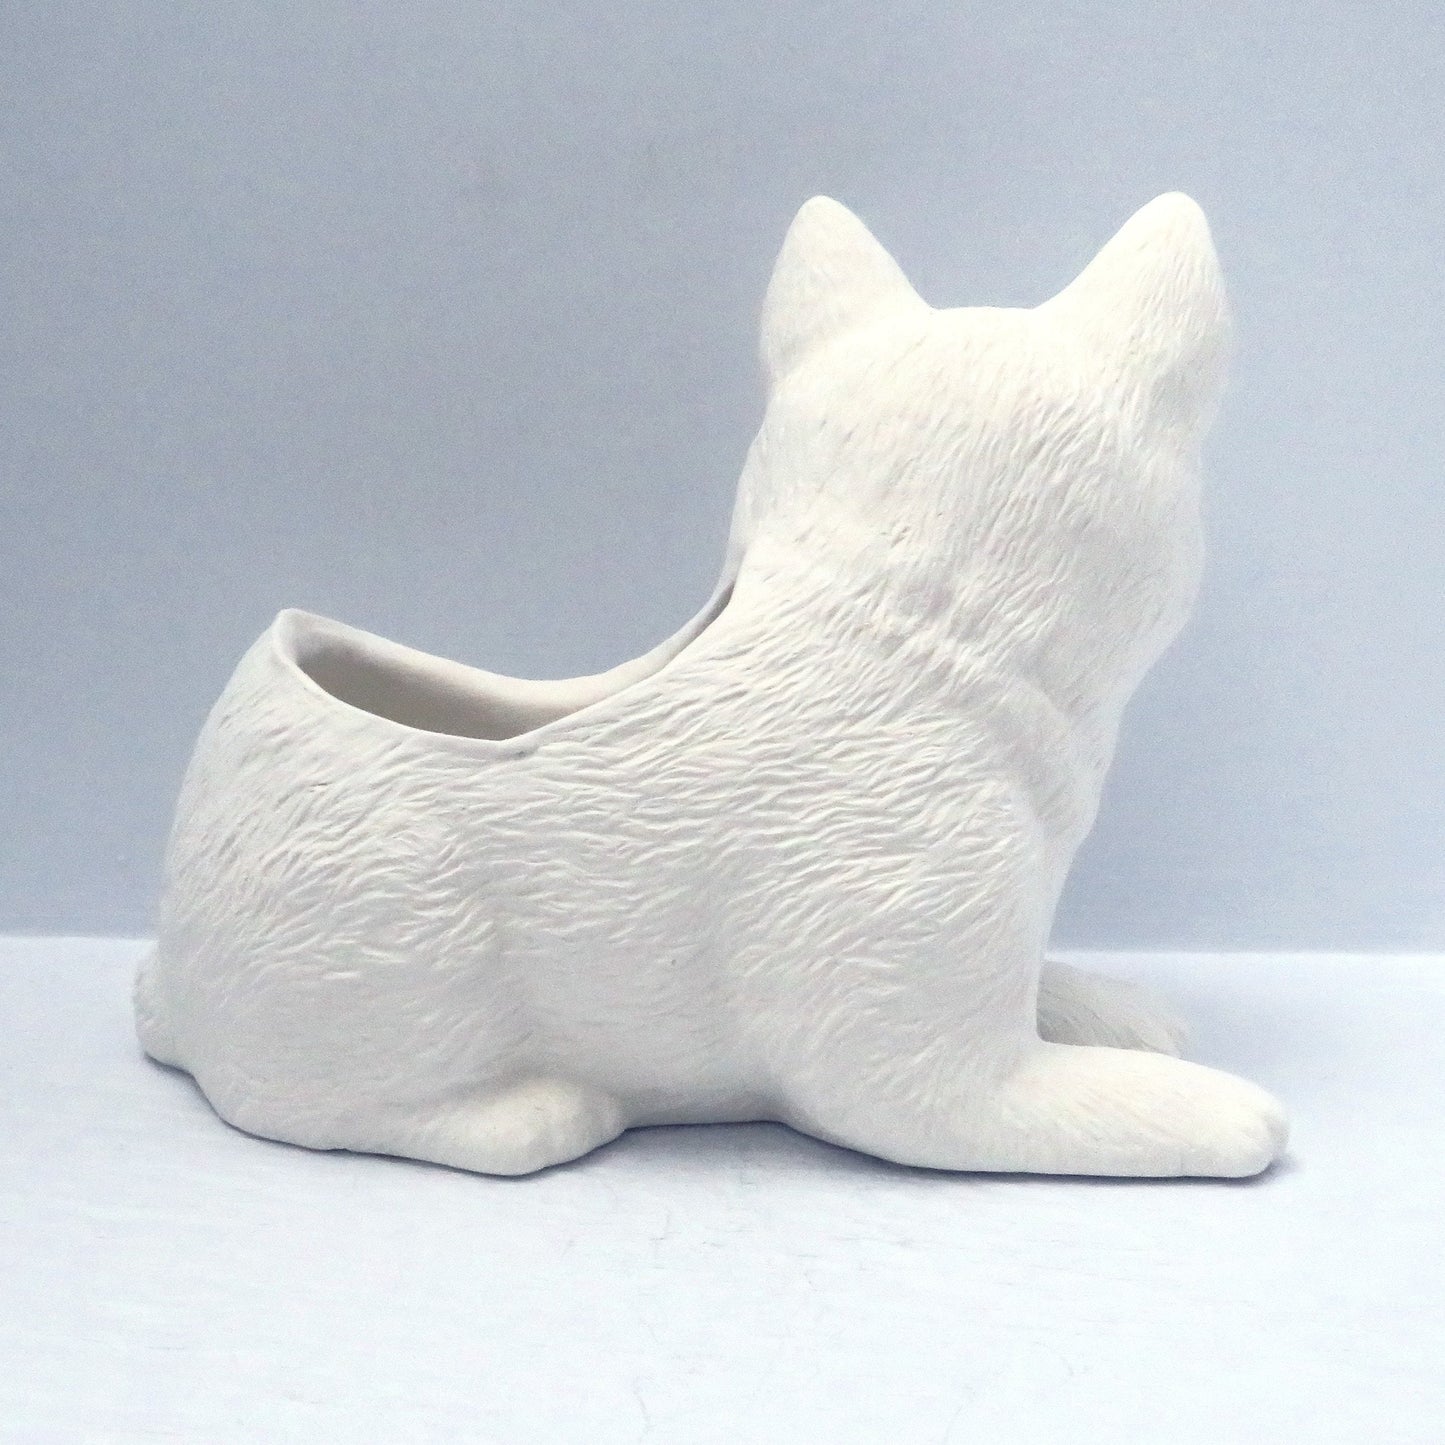 Handmade Ready to Paint Ceramic Bisque Cat Planter / Cat Figurine / Unpainted Ceramic Cat Flower Pot/ Ceramics to Paint / Succulent Planter